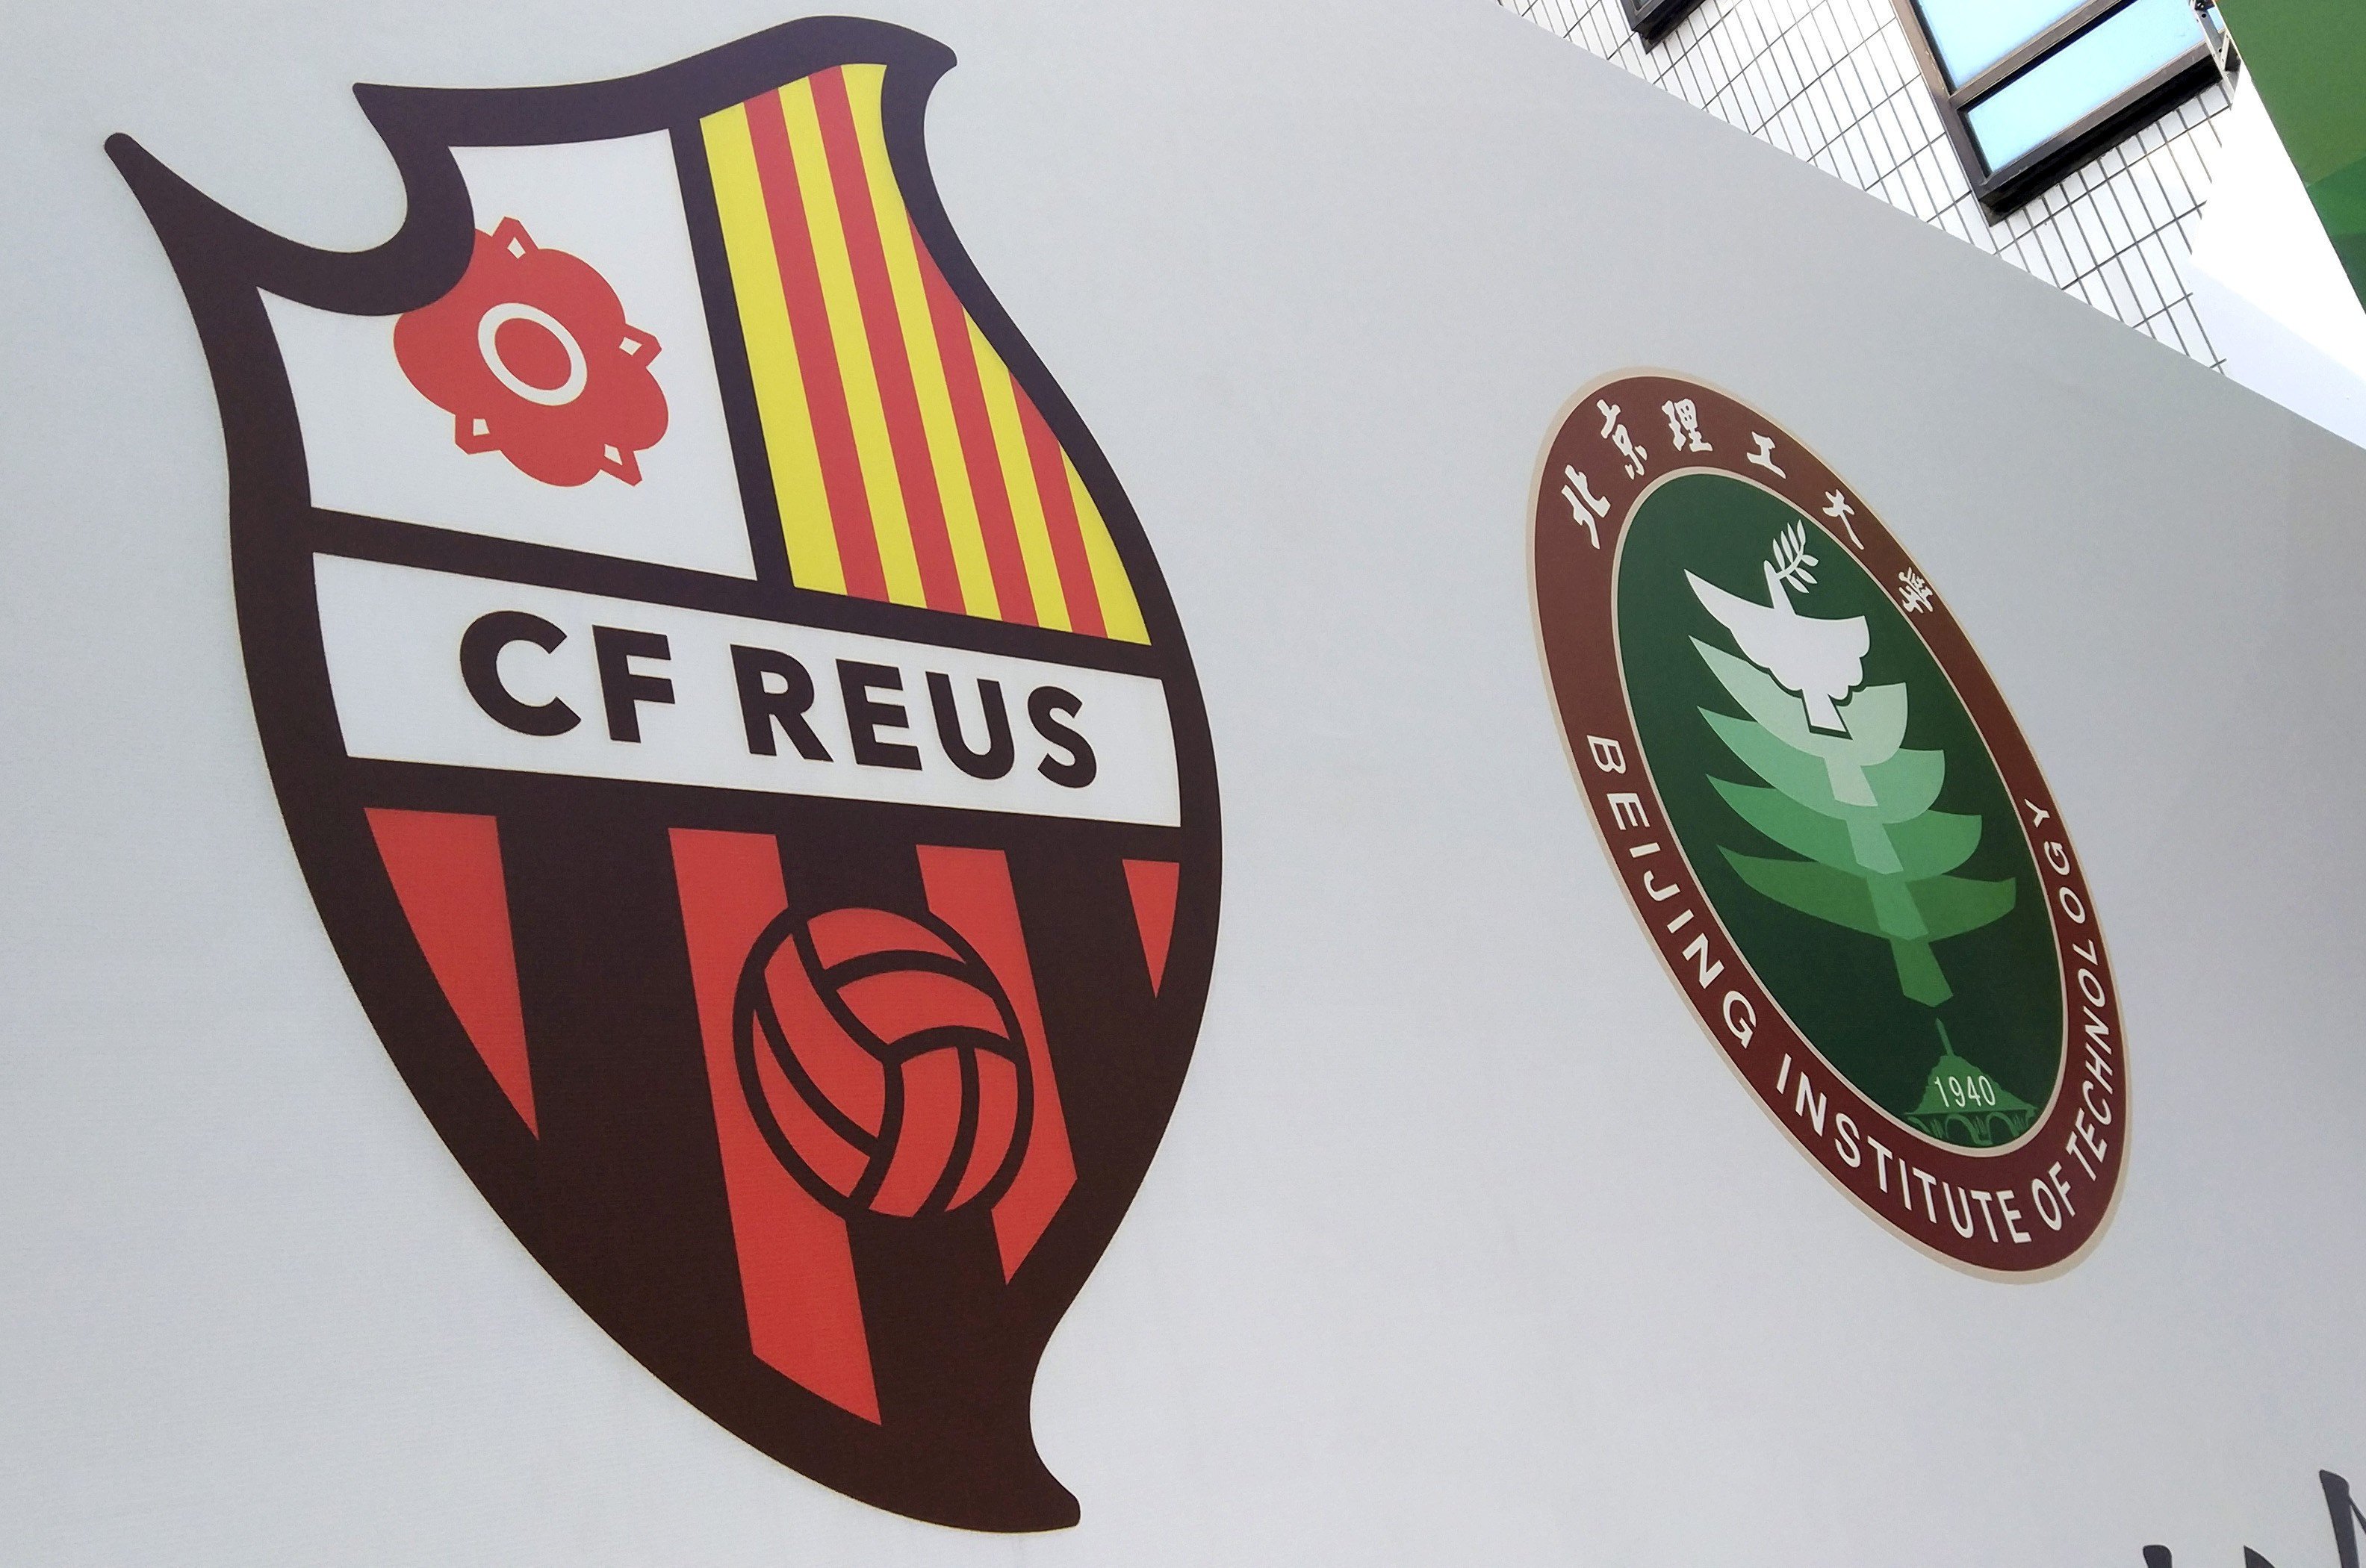 Laporta y Sala i Martín compran parte de un club chino en nombre del Reus